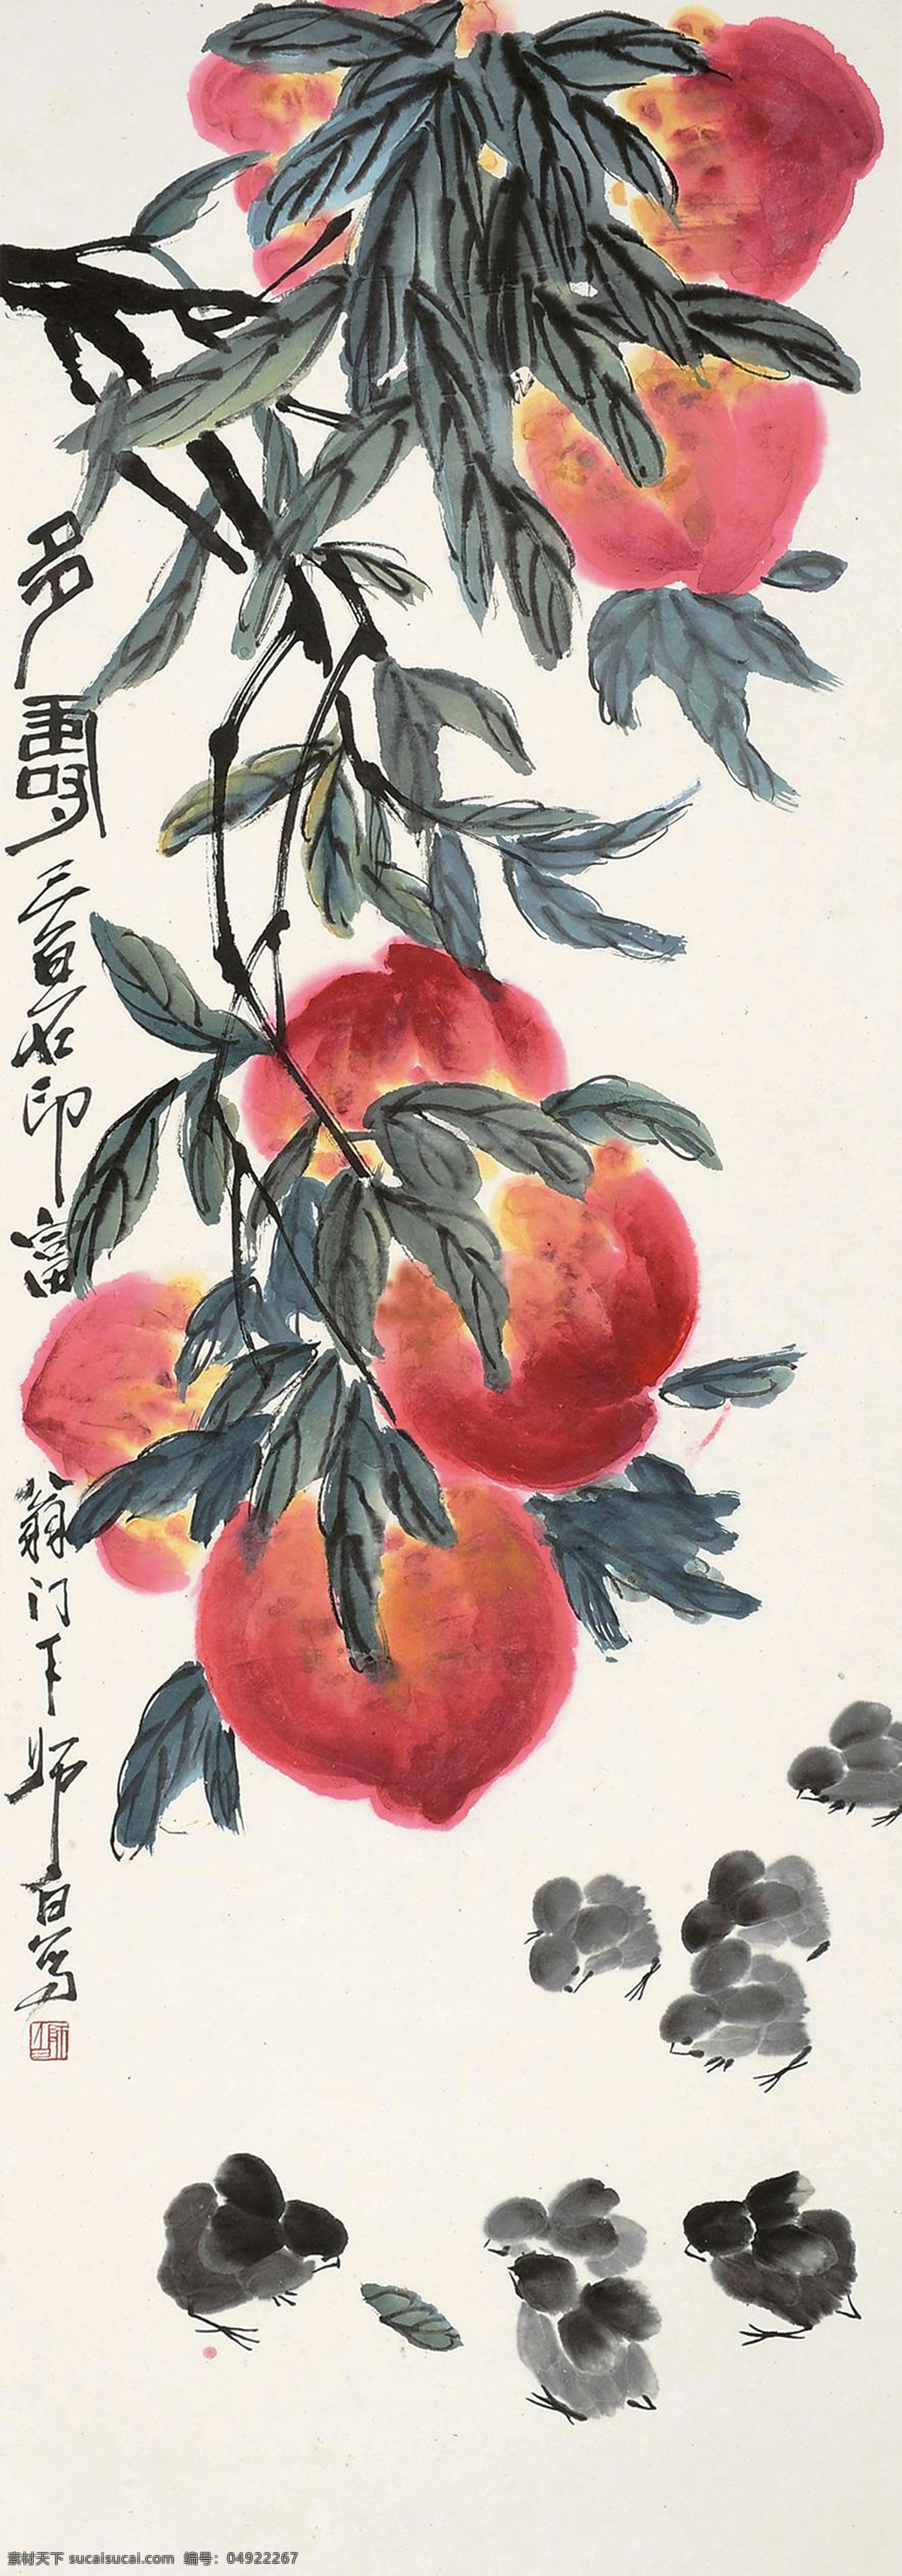 多寿 娄师白 国画 寿桃 桃子 年年有余 写意 水墨画 花鸟 中国画 绘画书法 文化艺术